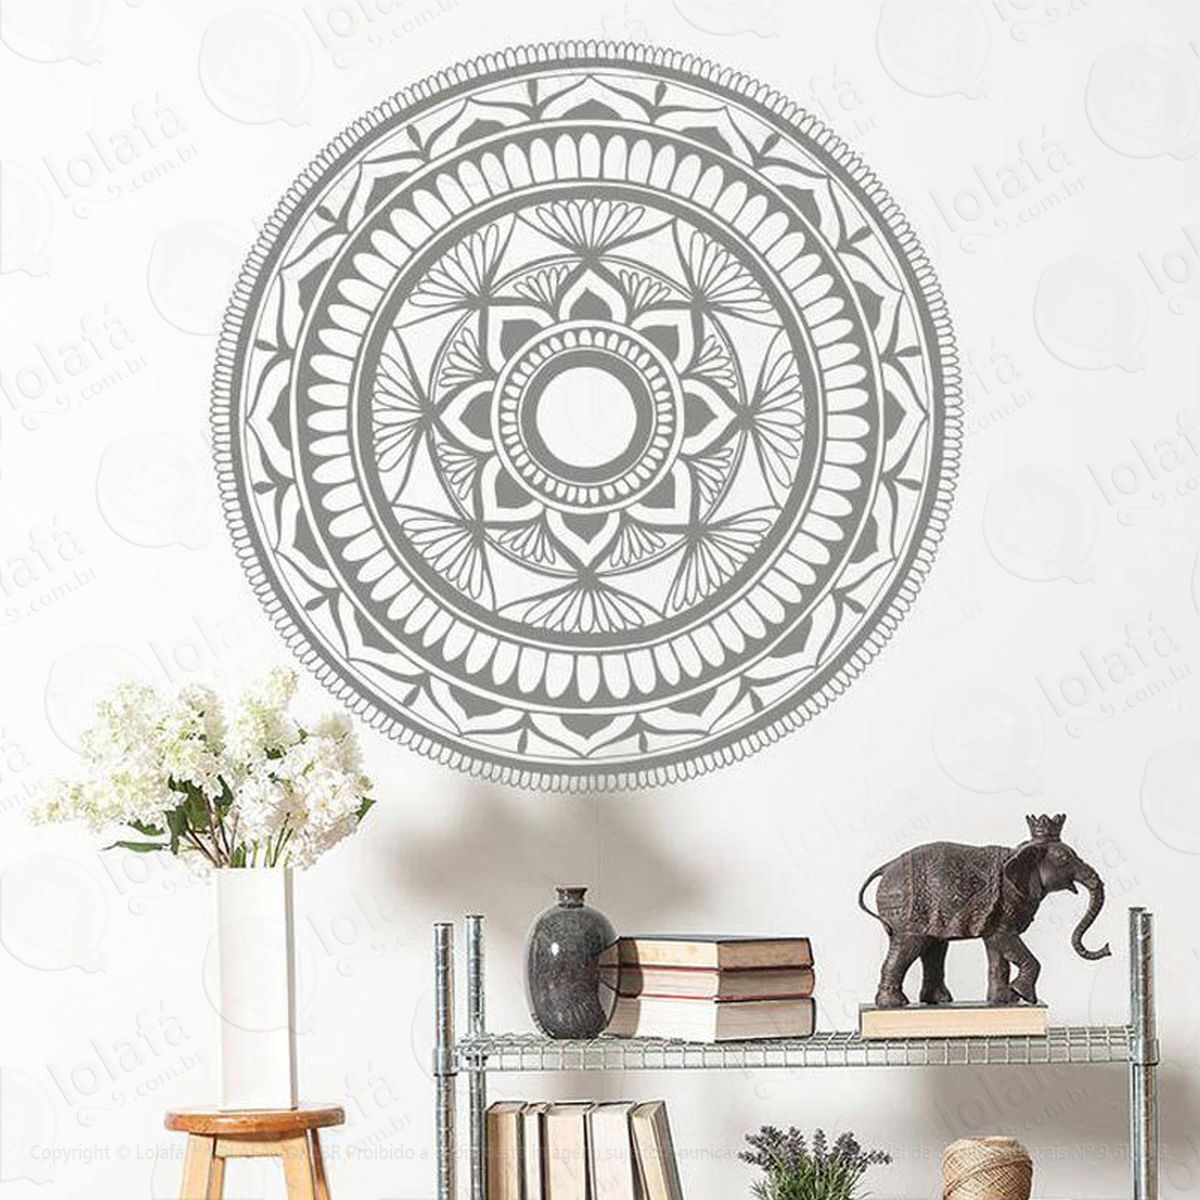 mandala da paz e gratidão adesivo de parede decorativo para casa, quarto, sala e vidro - mod:207